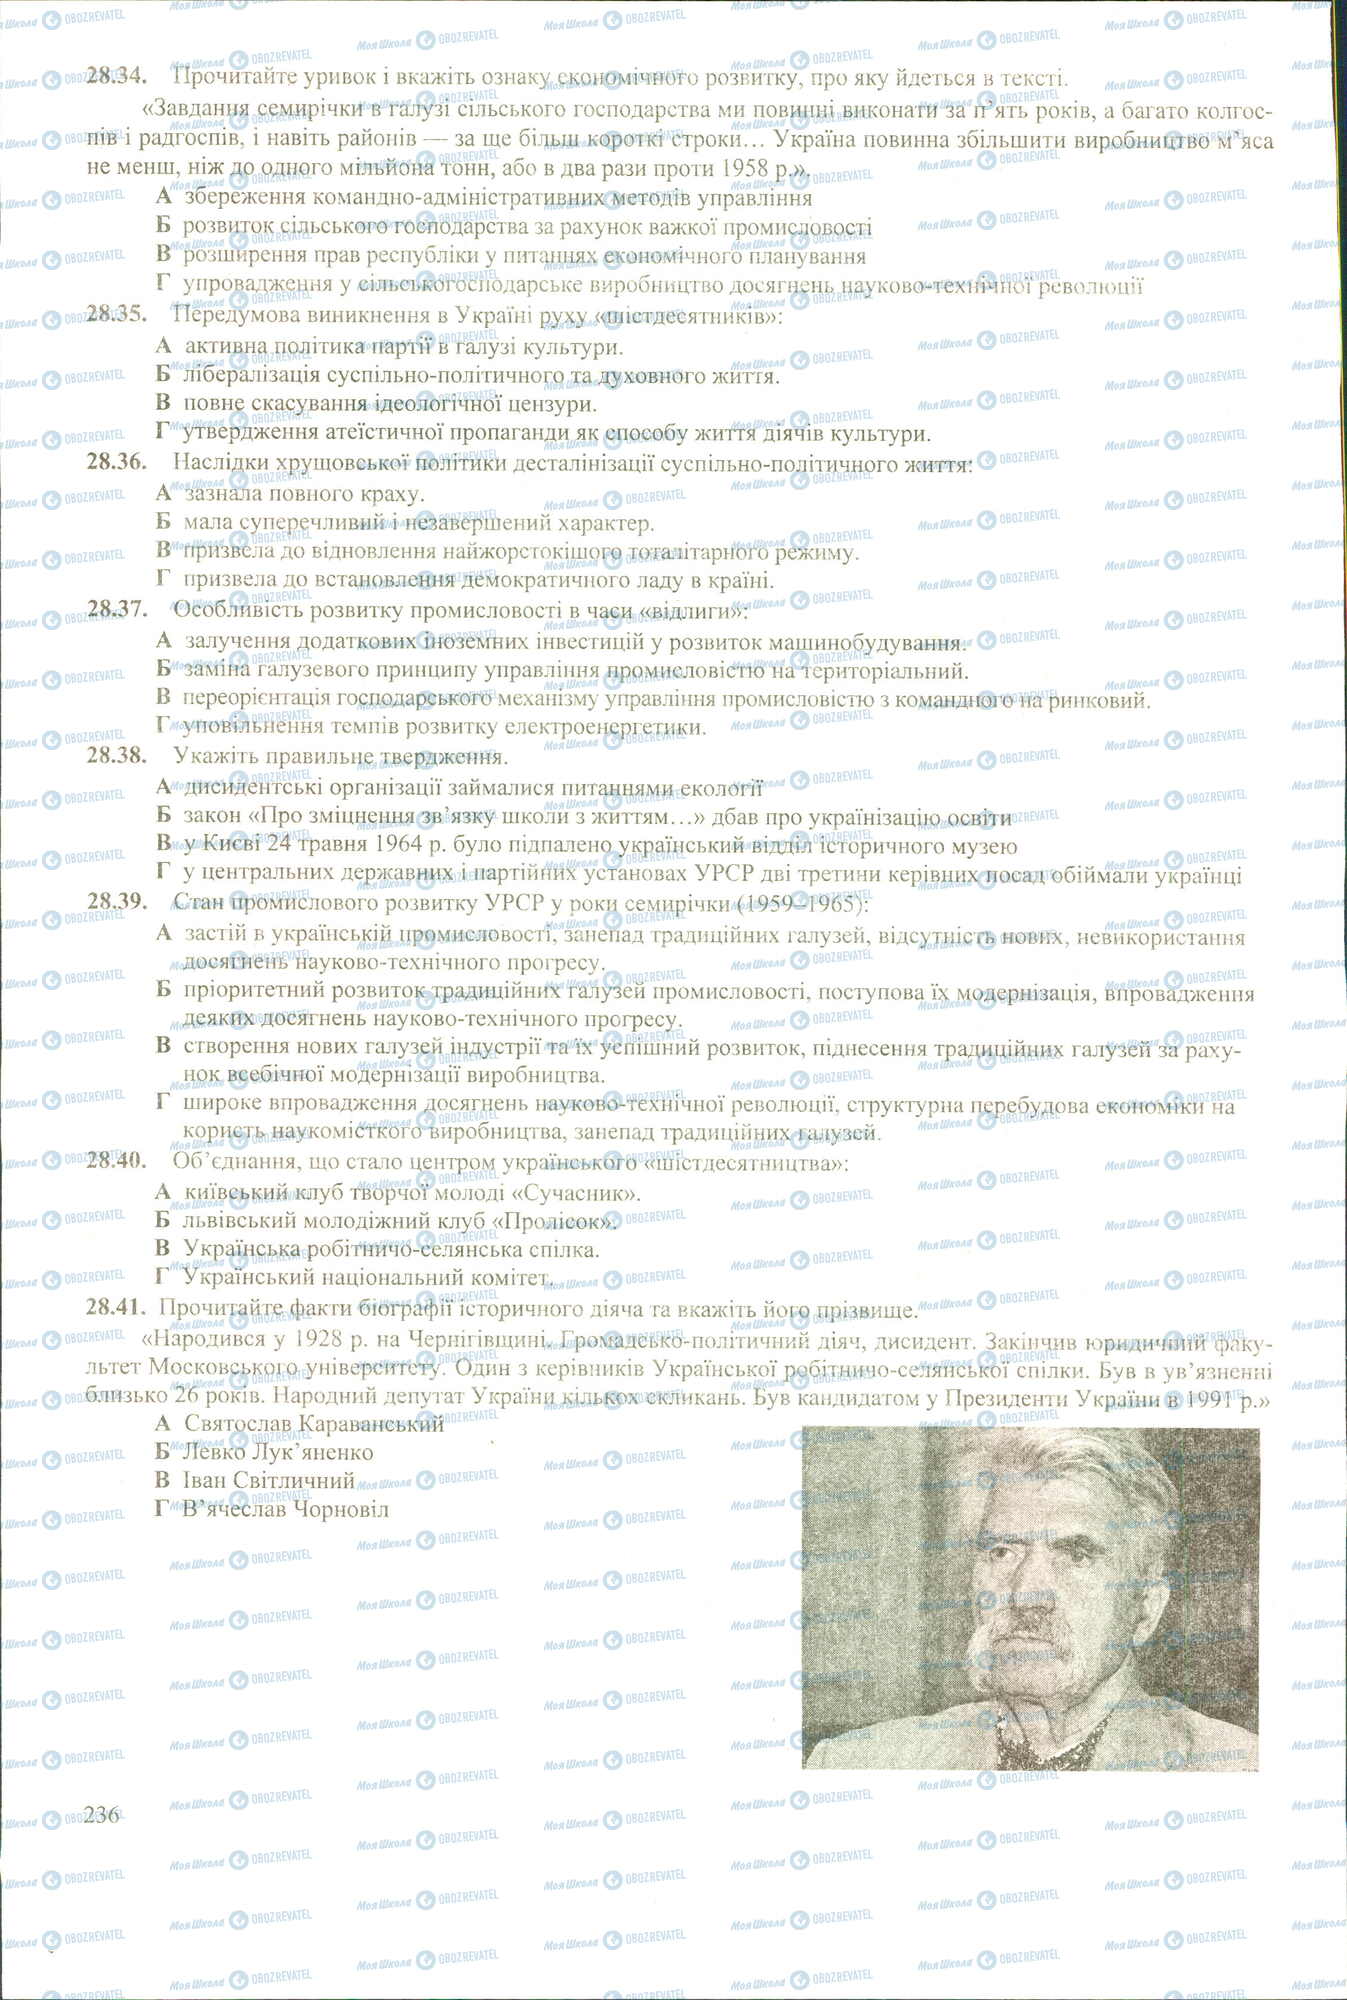 ЗНО История Украины 11 класс страница 34-41